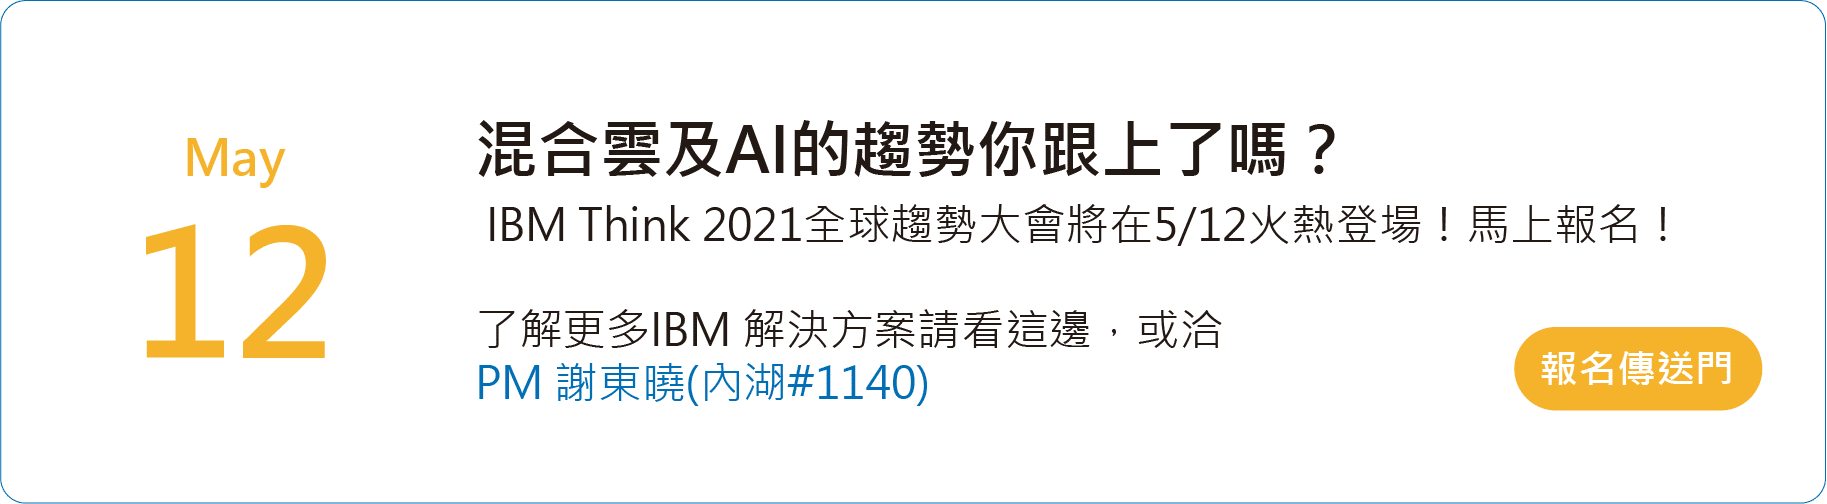 IBM Think 2021全球趨勢大會